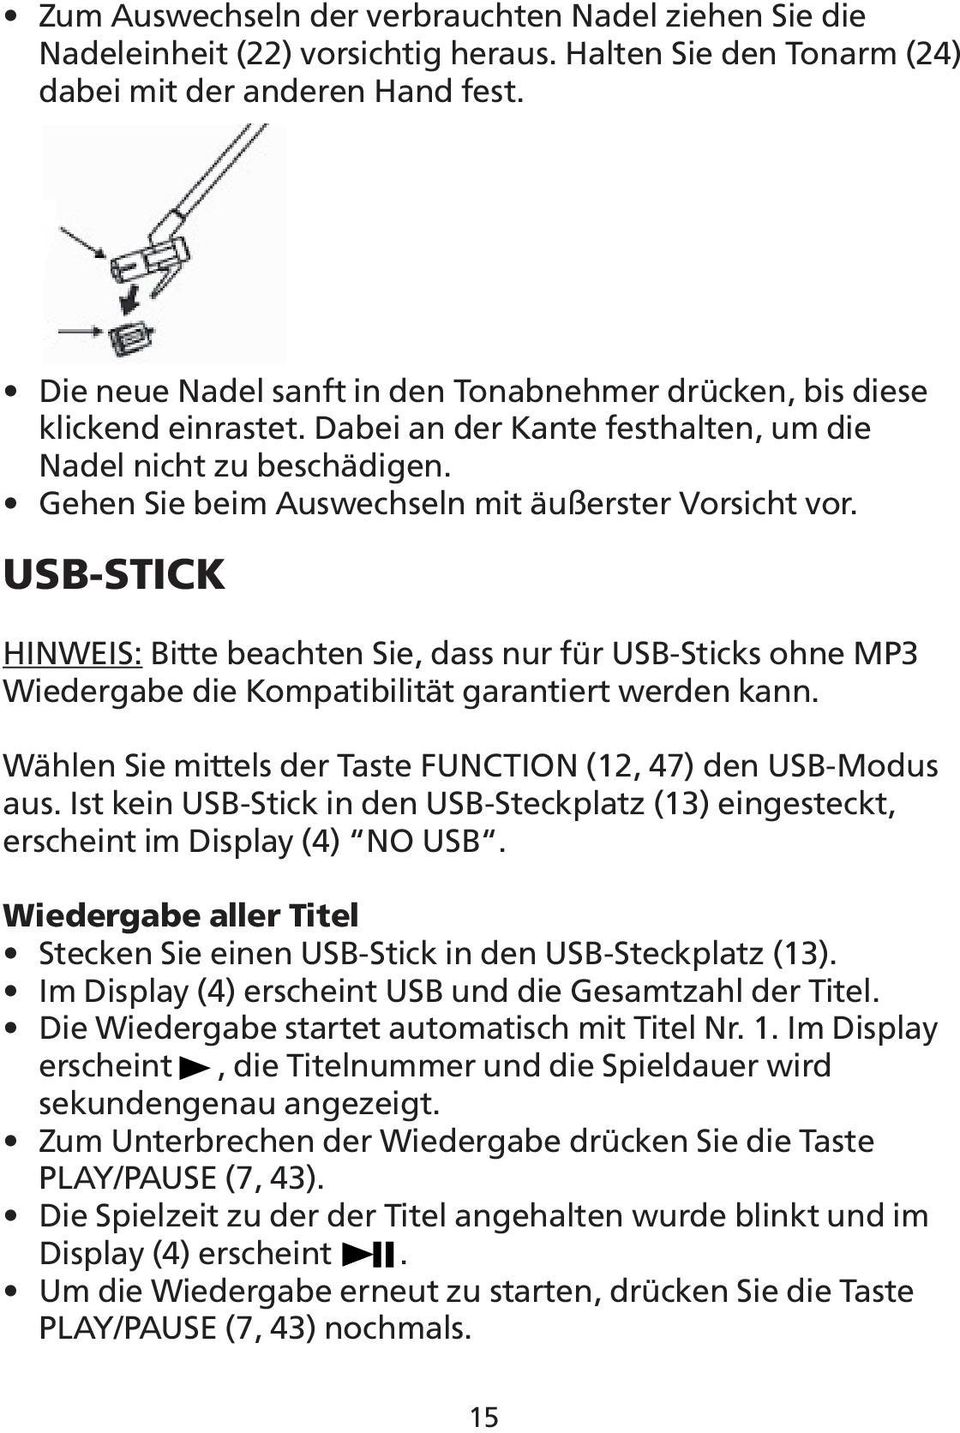 USB-STICK HINWEIS: Bitte beachten Sie, dass nur für USB-Sticks ohne MP3 Wiedergabe die Kompatibilität garantiert werden kann. Wählen Sie mittels der Taste FUNCTION (12, 47) den USB-Modus aus.